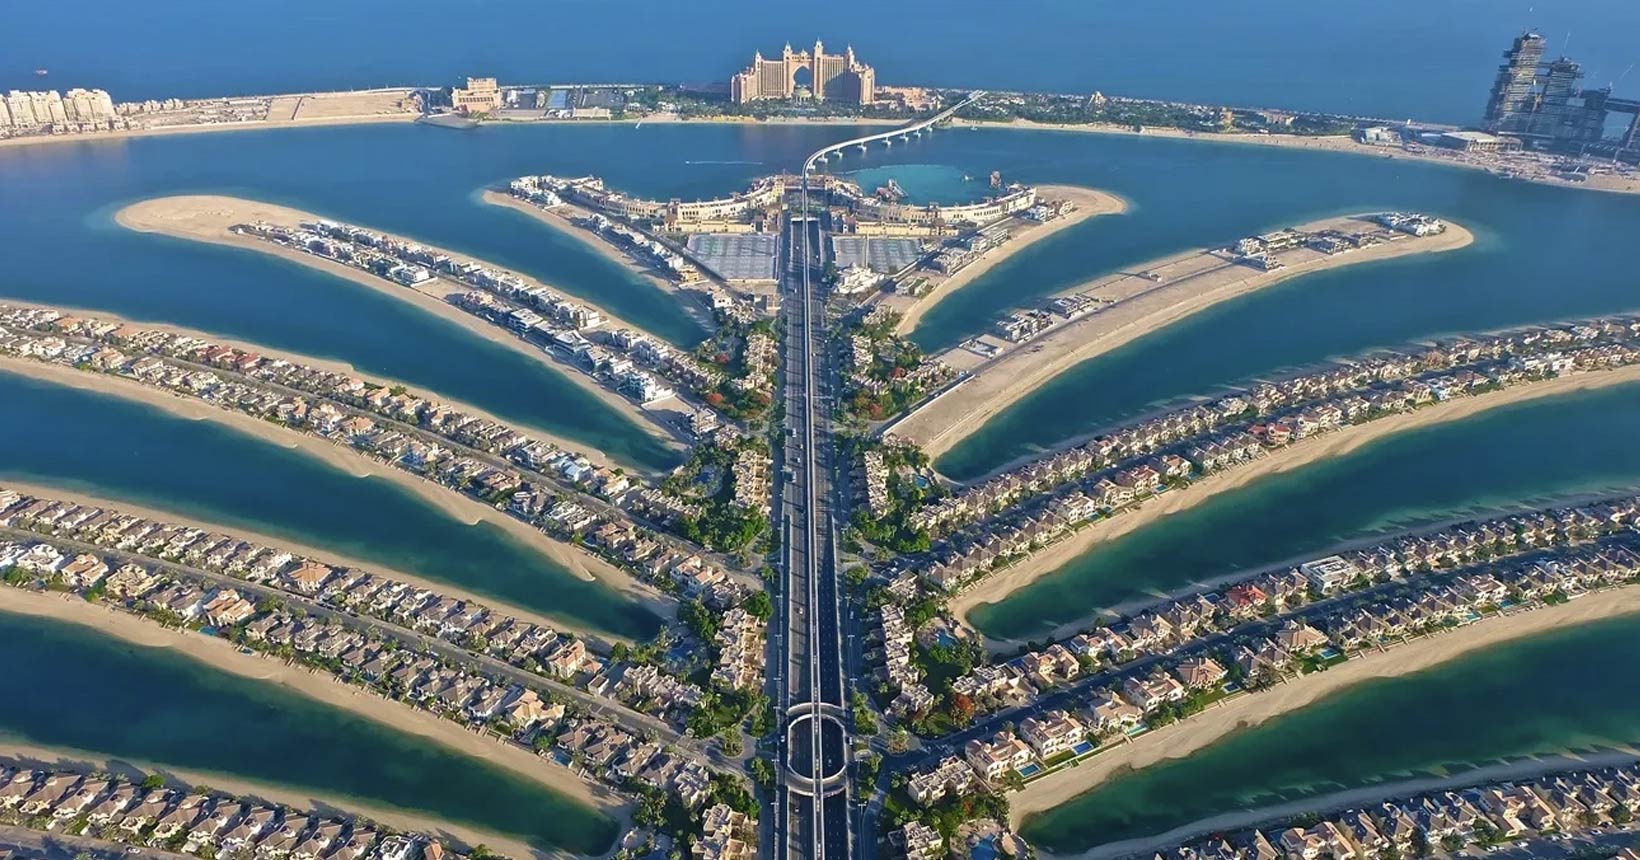 DUBAI – ABU DHABI: Giấc mơ Ả Rập trong Ngàn lẻ một đêm